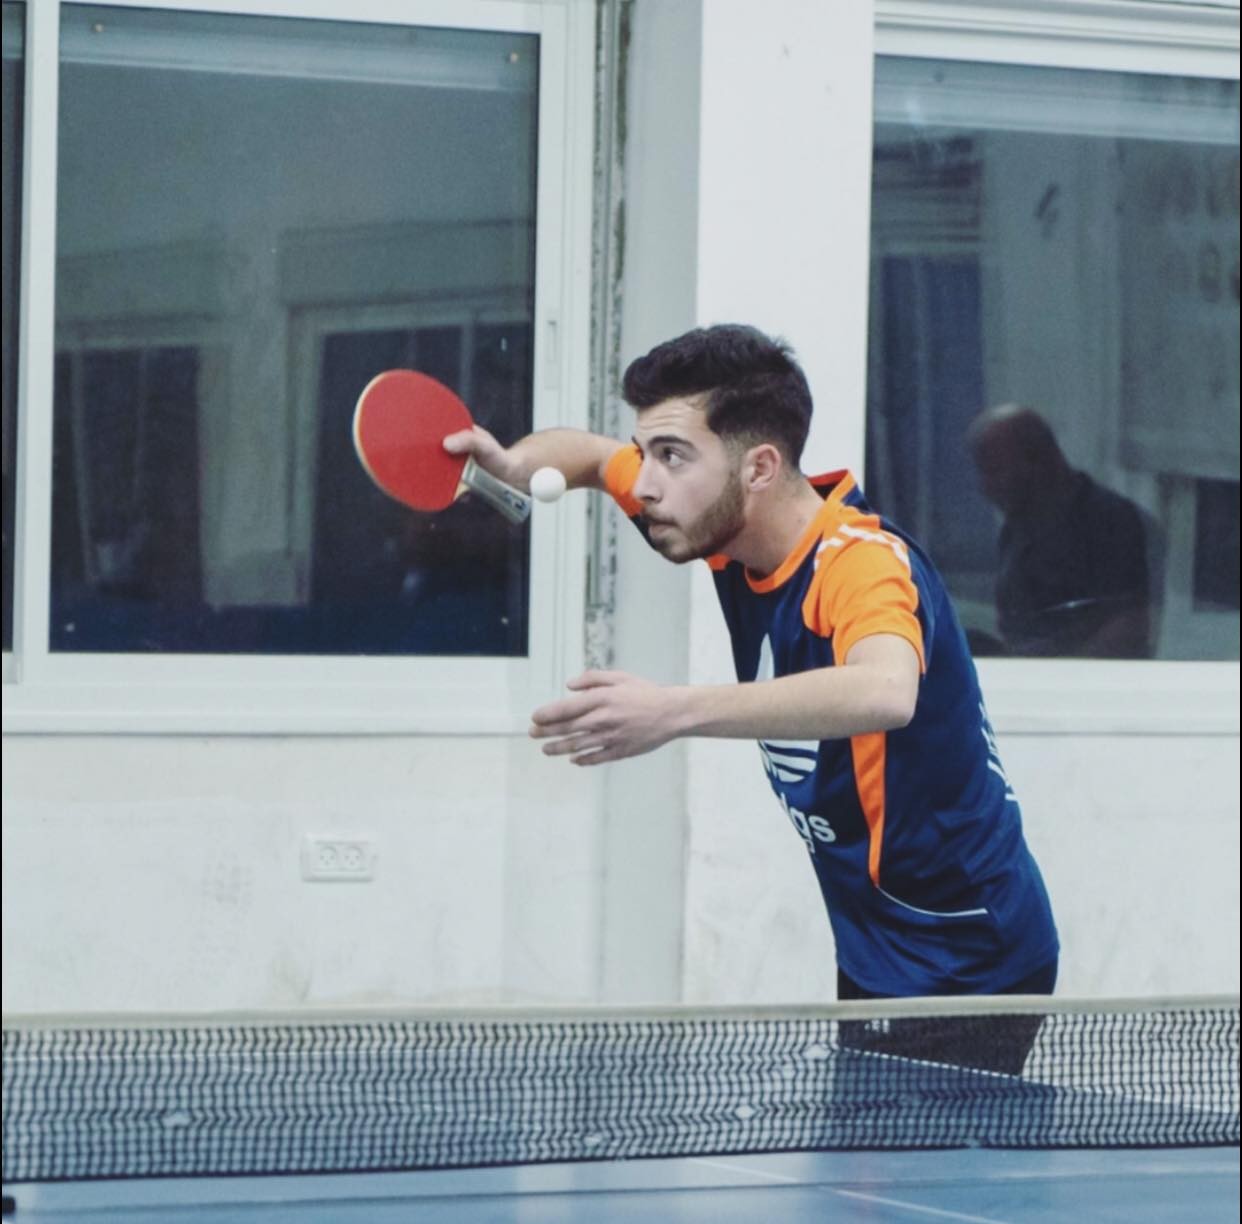 لاعب من مخيم العروب يعلن اعتزاله كرة الطاولة